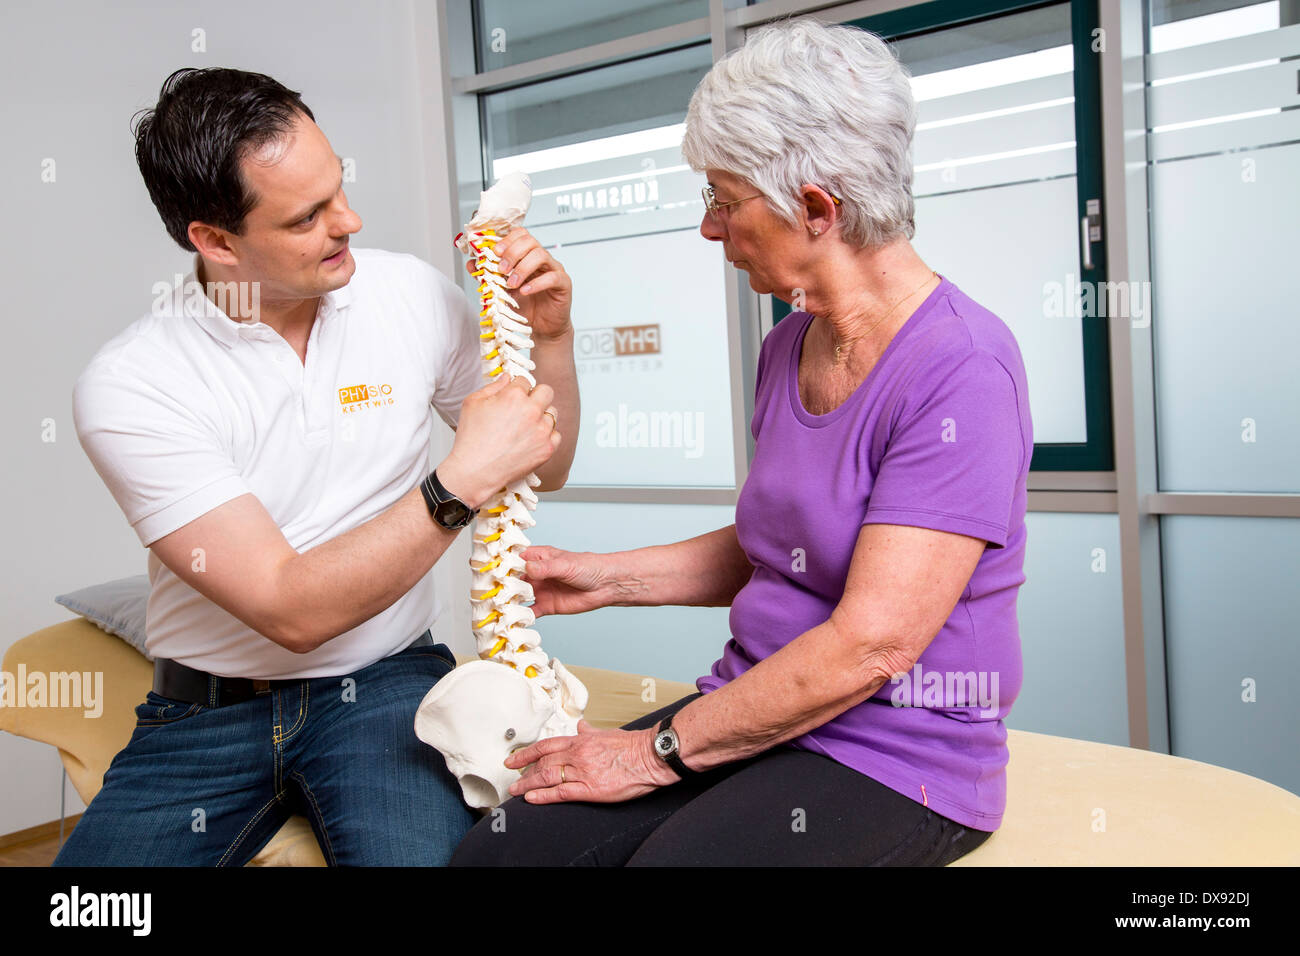 La pratica di fisioterapia terapista con paziente spiegazione del problema le aree e gli approcci di terapia, la spina dorsale del modello. Foto Stock